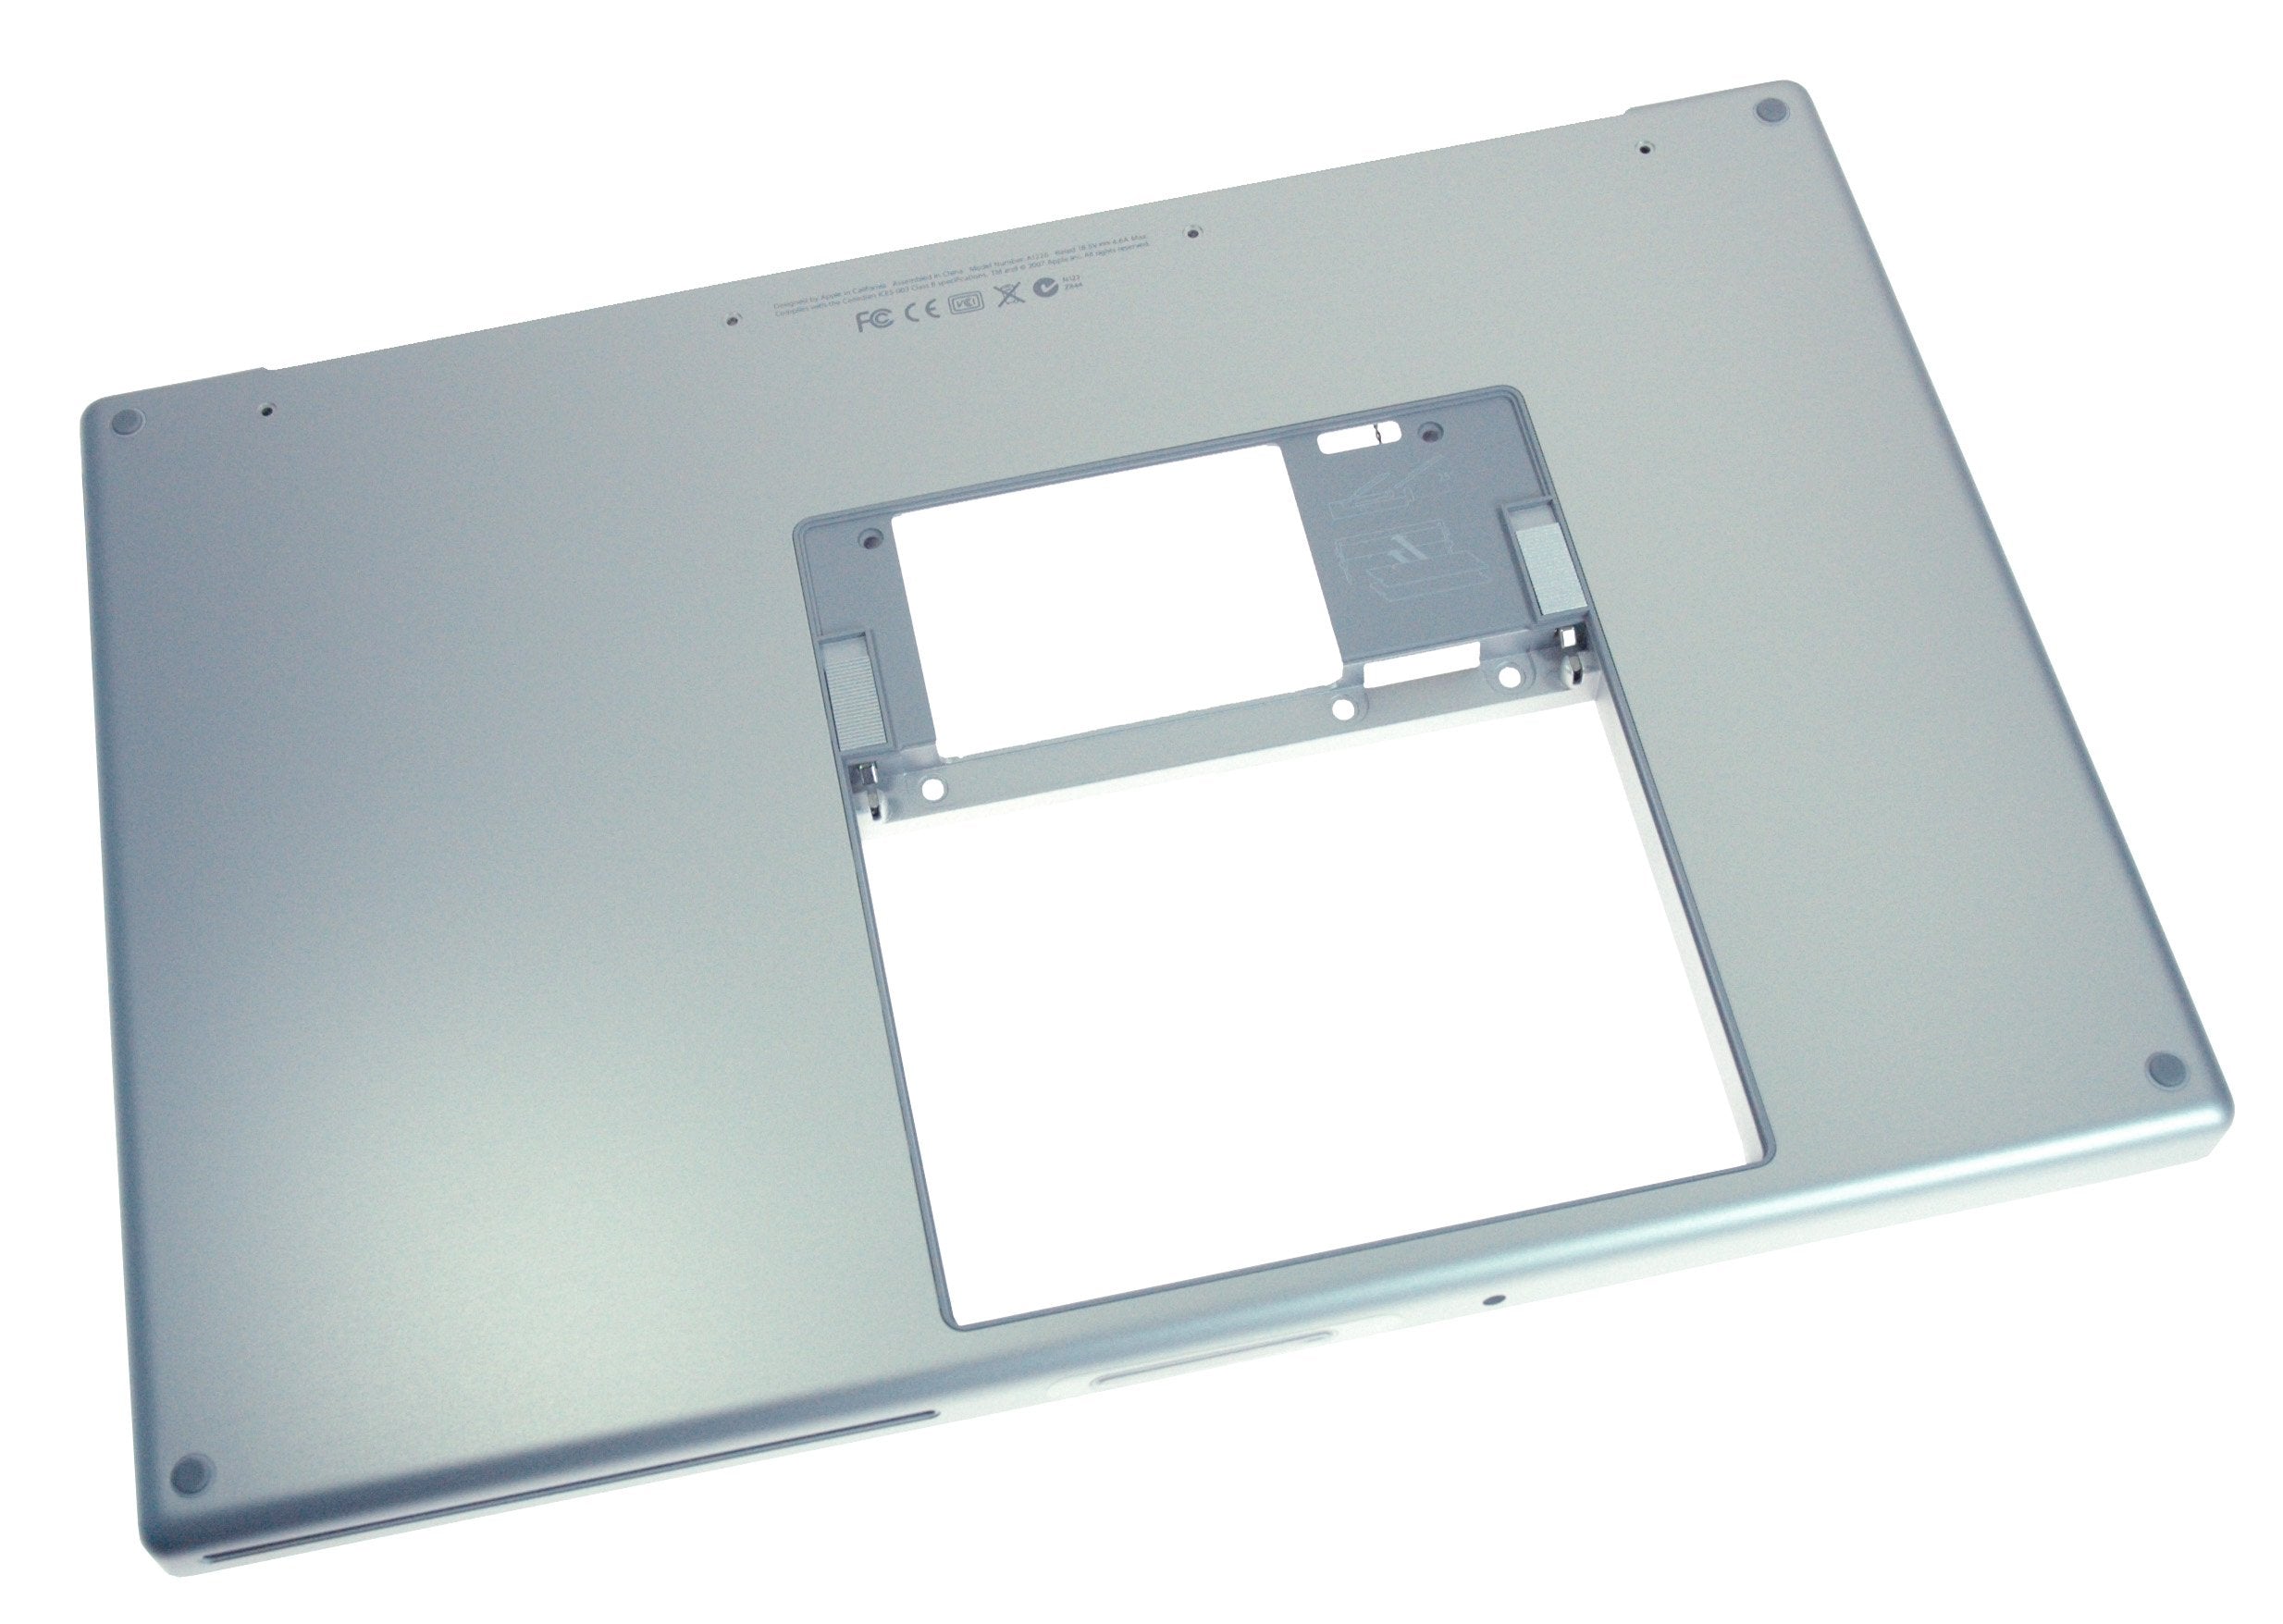 MacBook Pro 15" (Model A1226) Lower Case